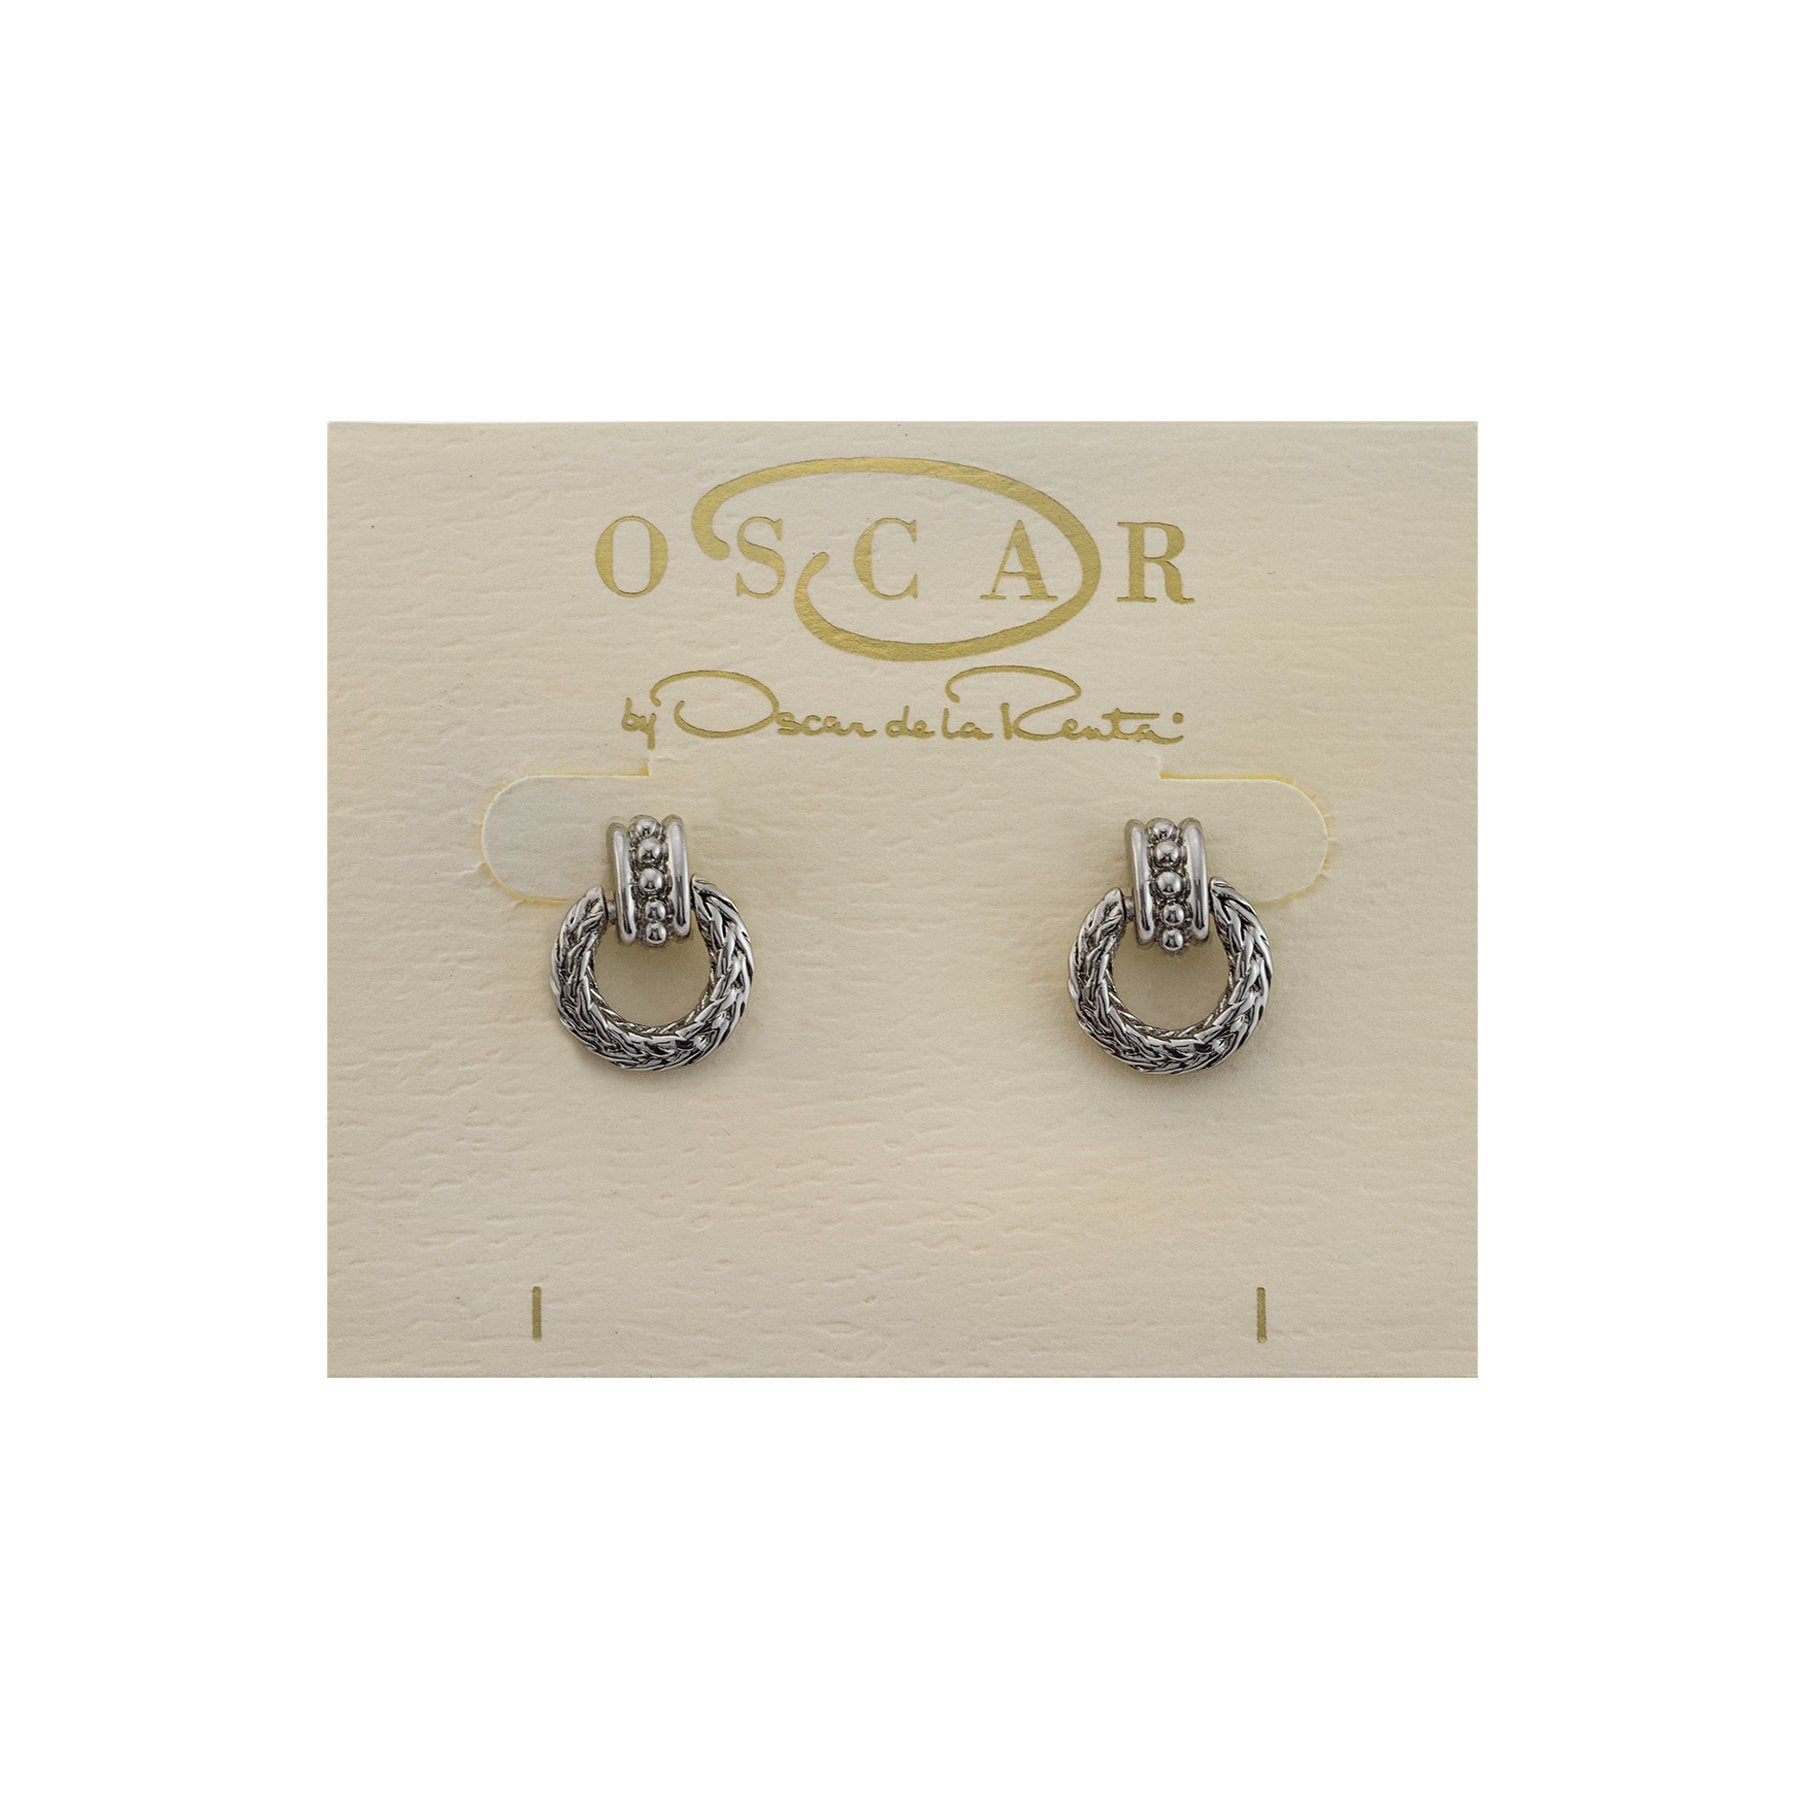 Vintage Earrings Oscar De La Renta Antique Silver Tone Braided Dangling Hoops Earrings #OS106 - Limited Stock - Never Worn